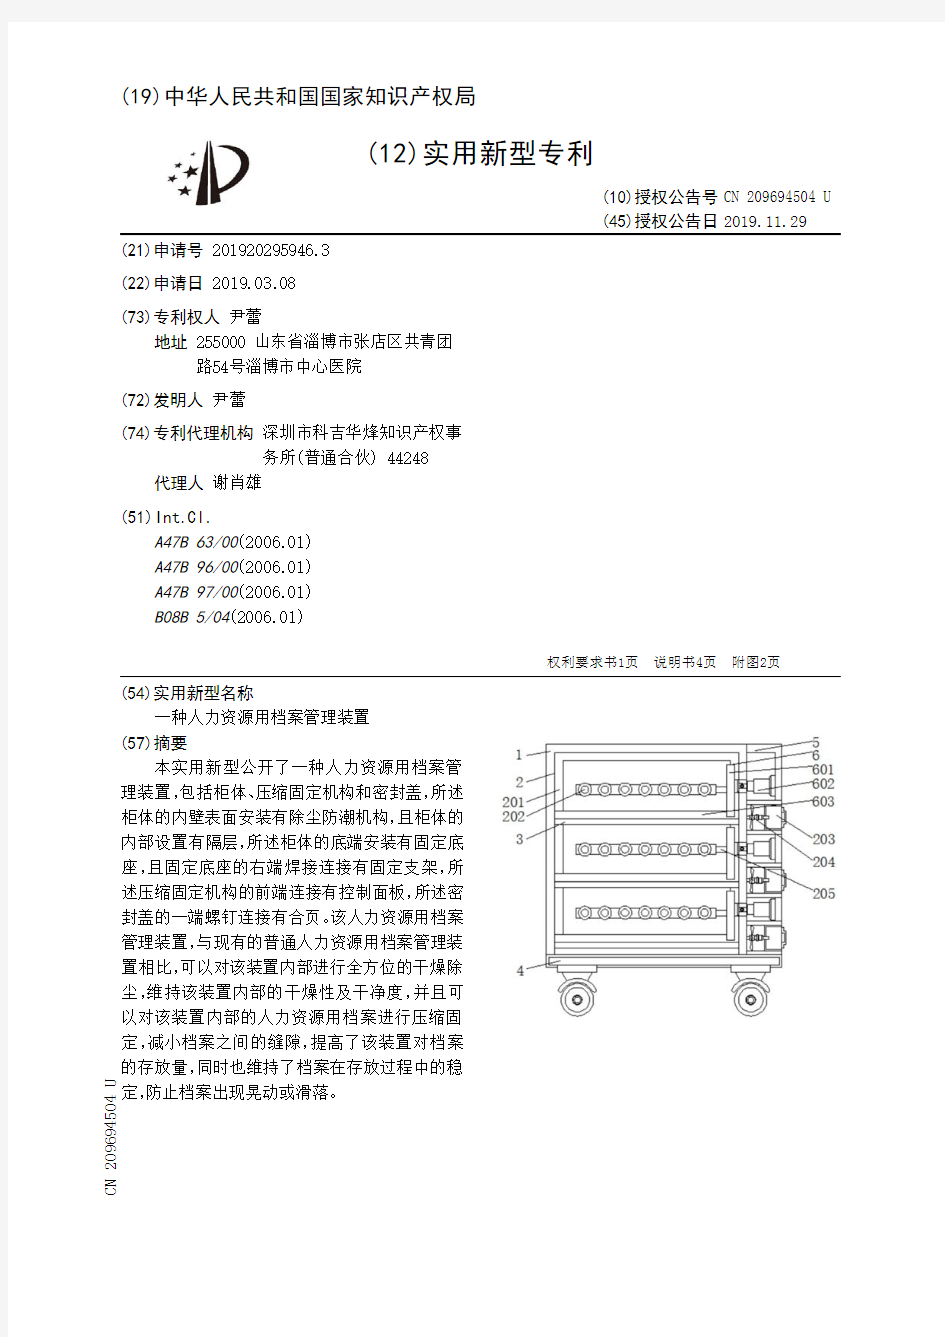 【CN209694504U】一种人力资源用档案管理装置【专利】